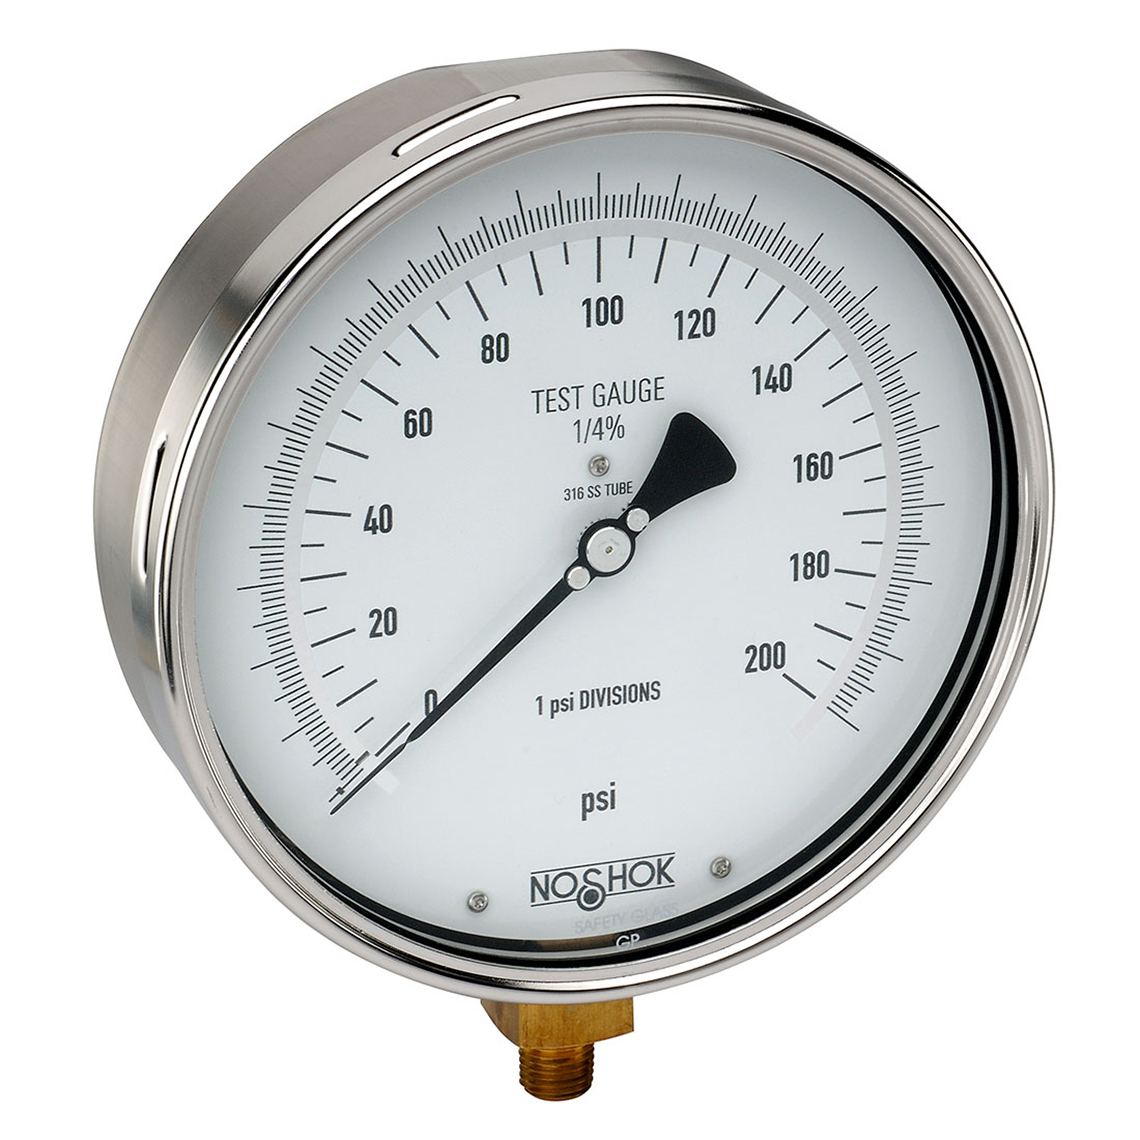 60-800-1000-psi 800 Series Precision Test Pressure Gauges